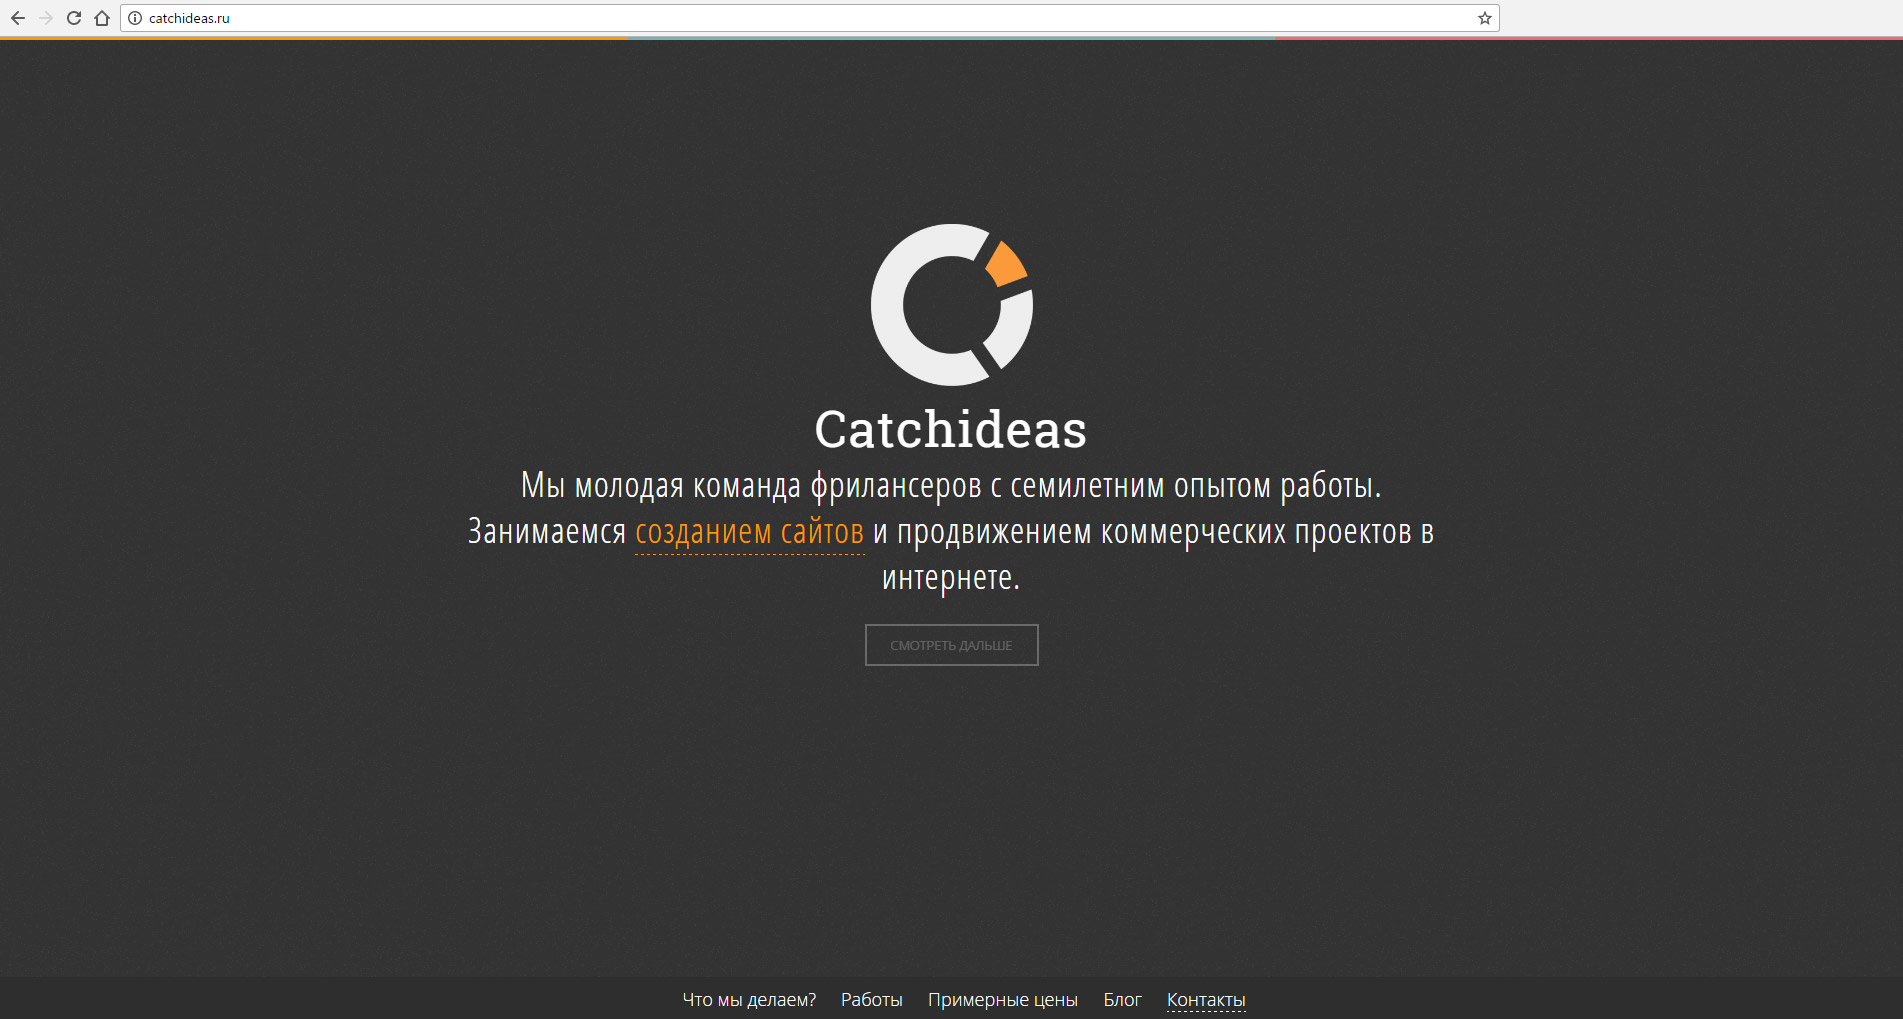 Catchideas — старая версия сайта